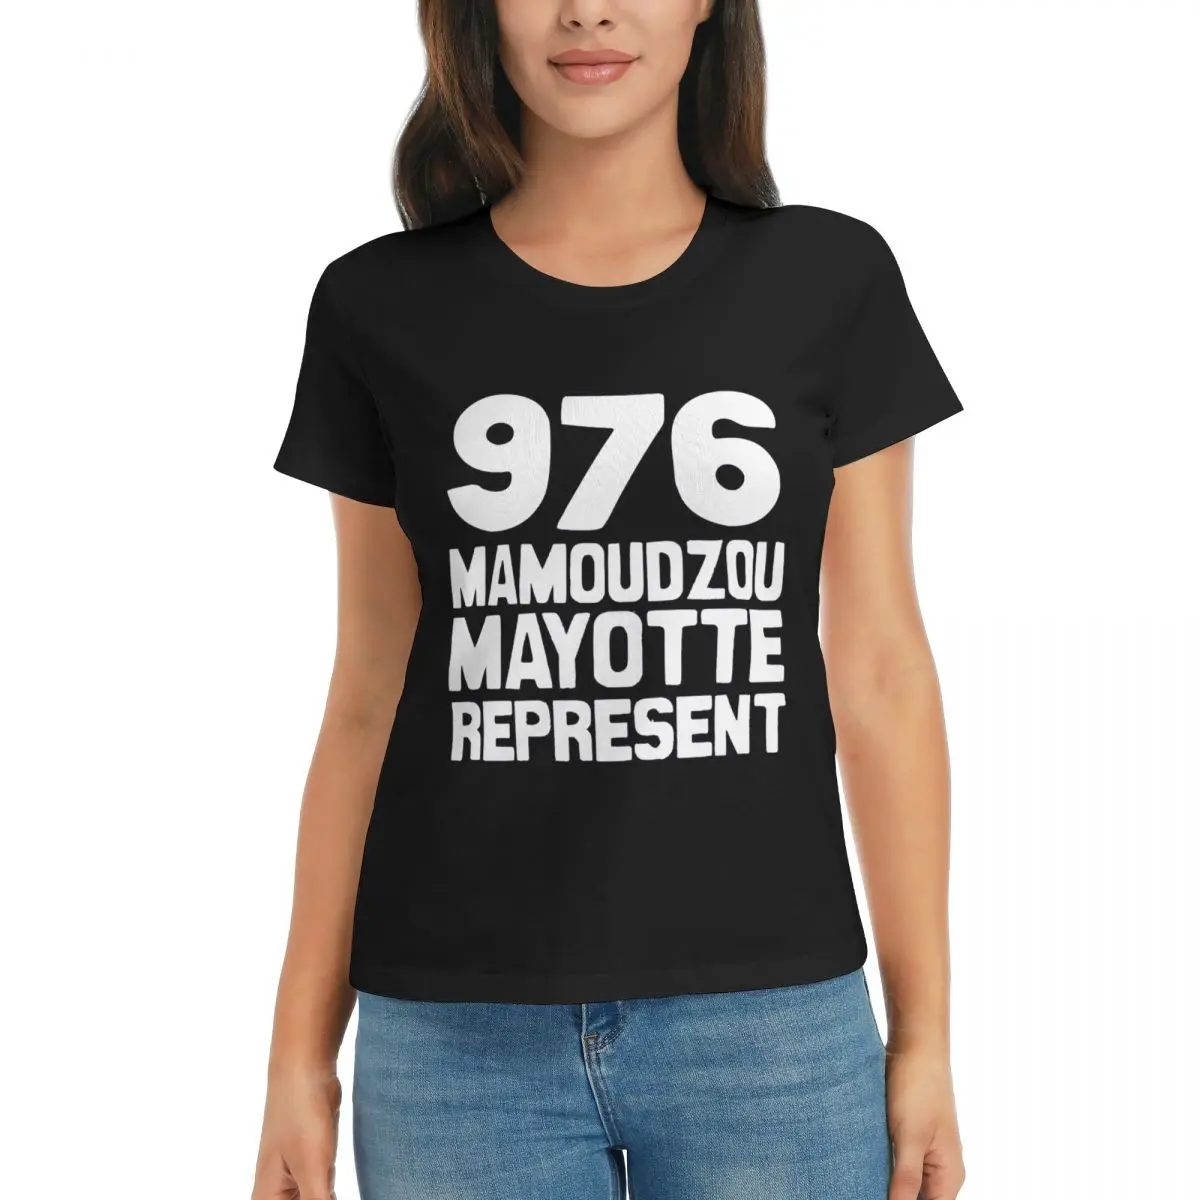 

Спортивные майки 976 Mamoudzou Mayotte representer Essential R330, черные креативные высококачественные футболки для соревнований по активности, американский размер